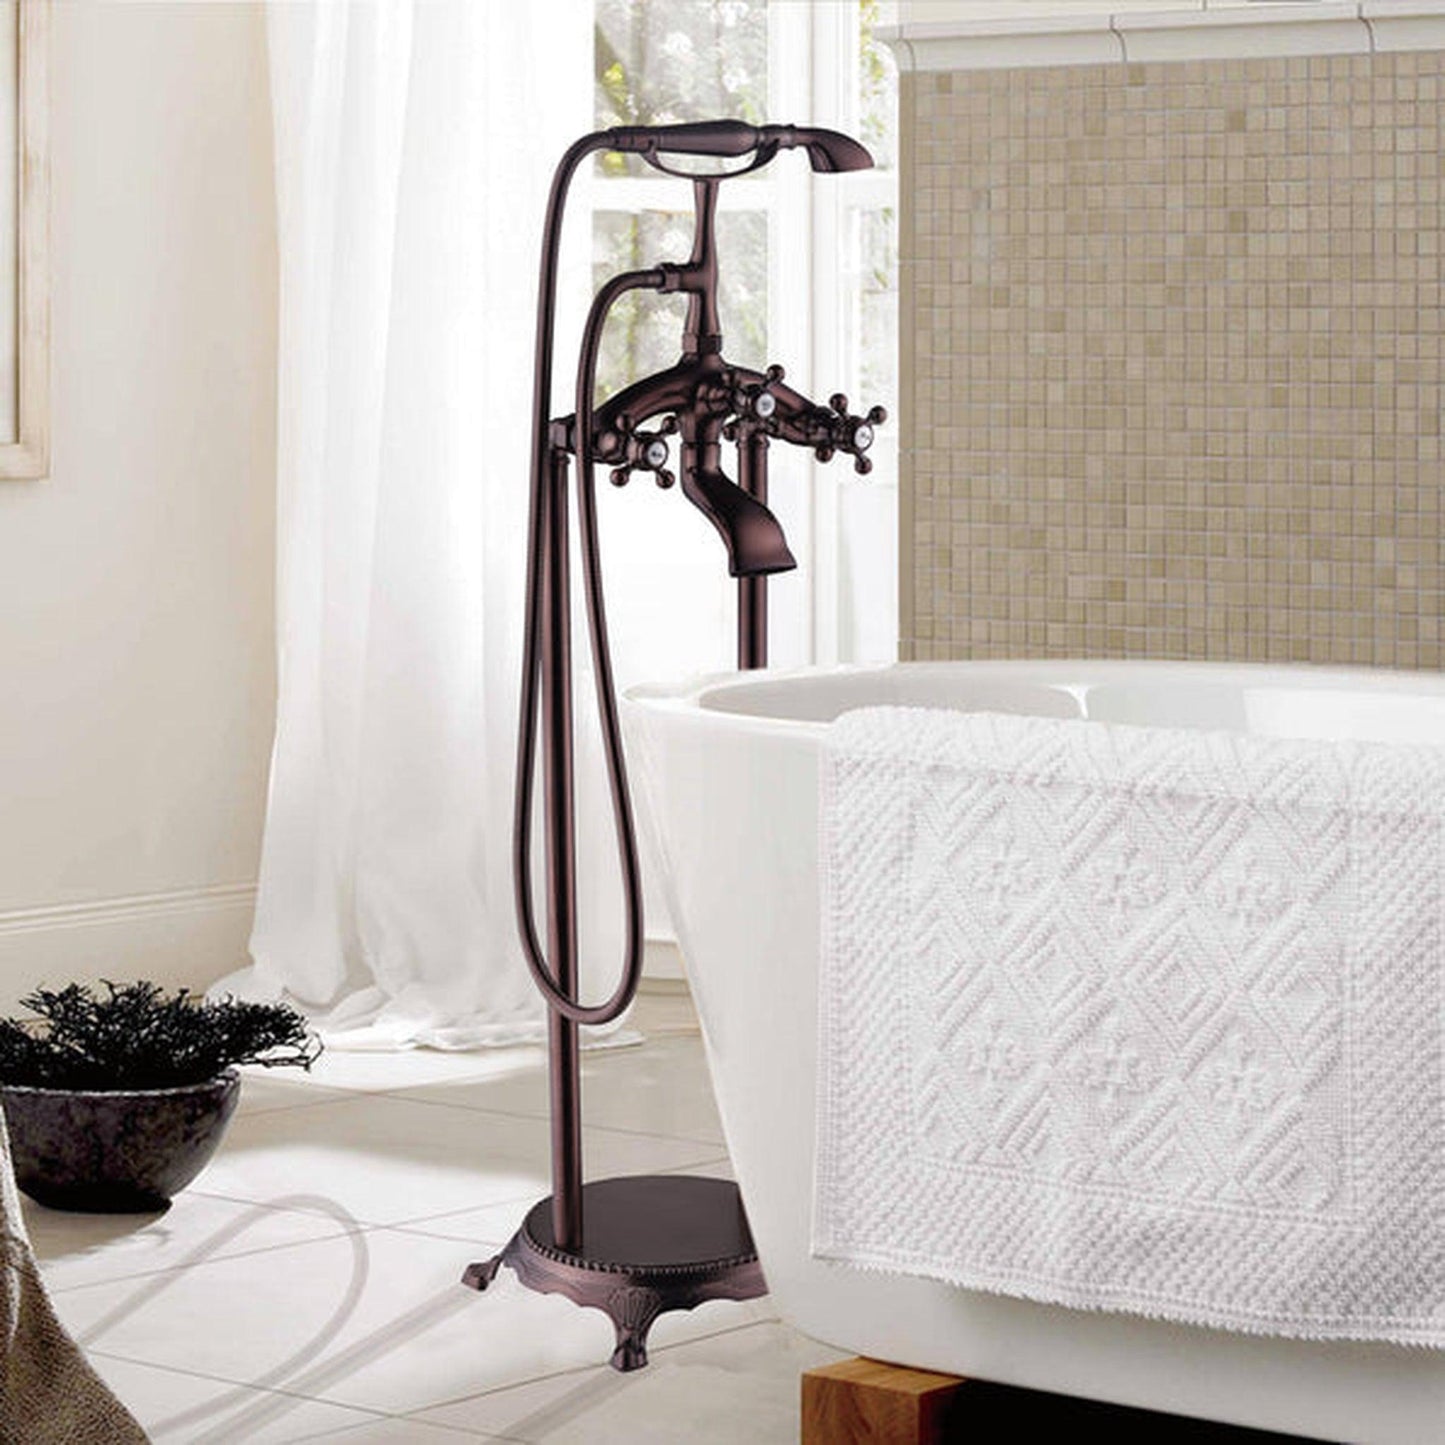 Vanity Art VA2019 40" Oil Rubbed Bronze Freestanding Floor Mounted Bathtub Faucet With Handheld Shower